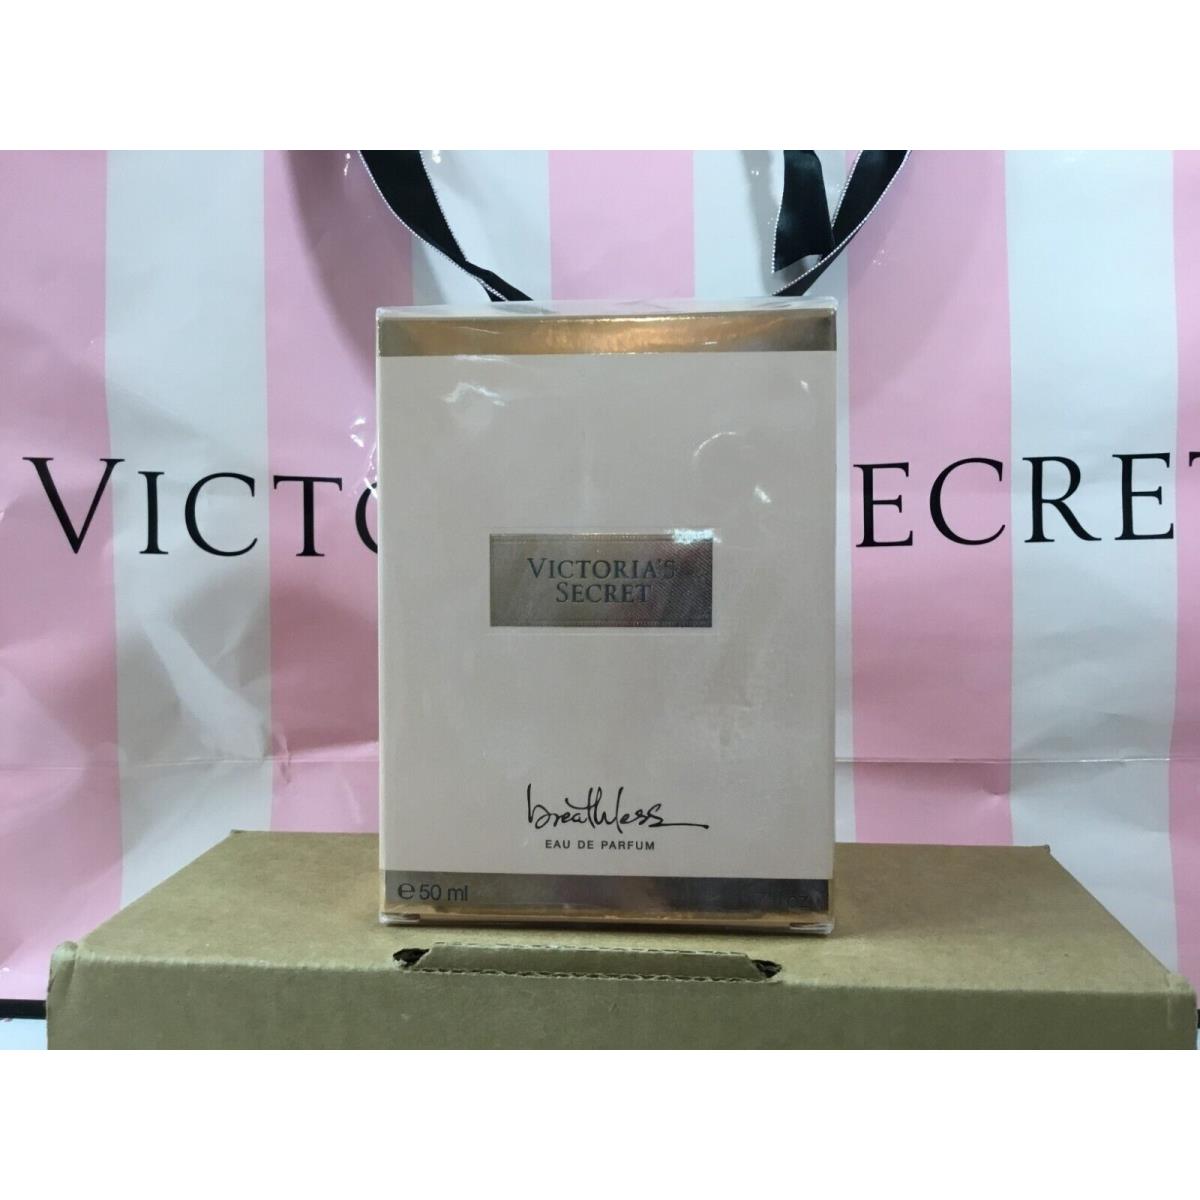 Victoria`s Secret Pink The Victoria Chain Crossbody Bag R.P.$58.00